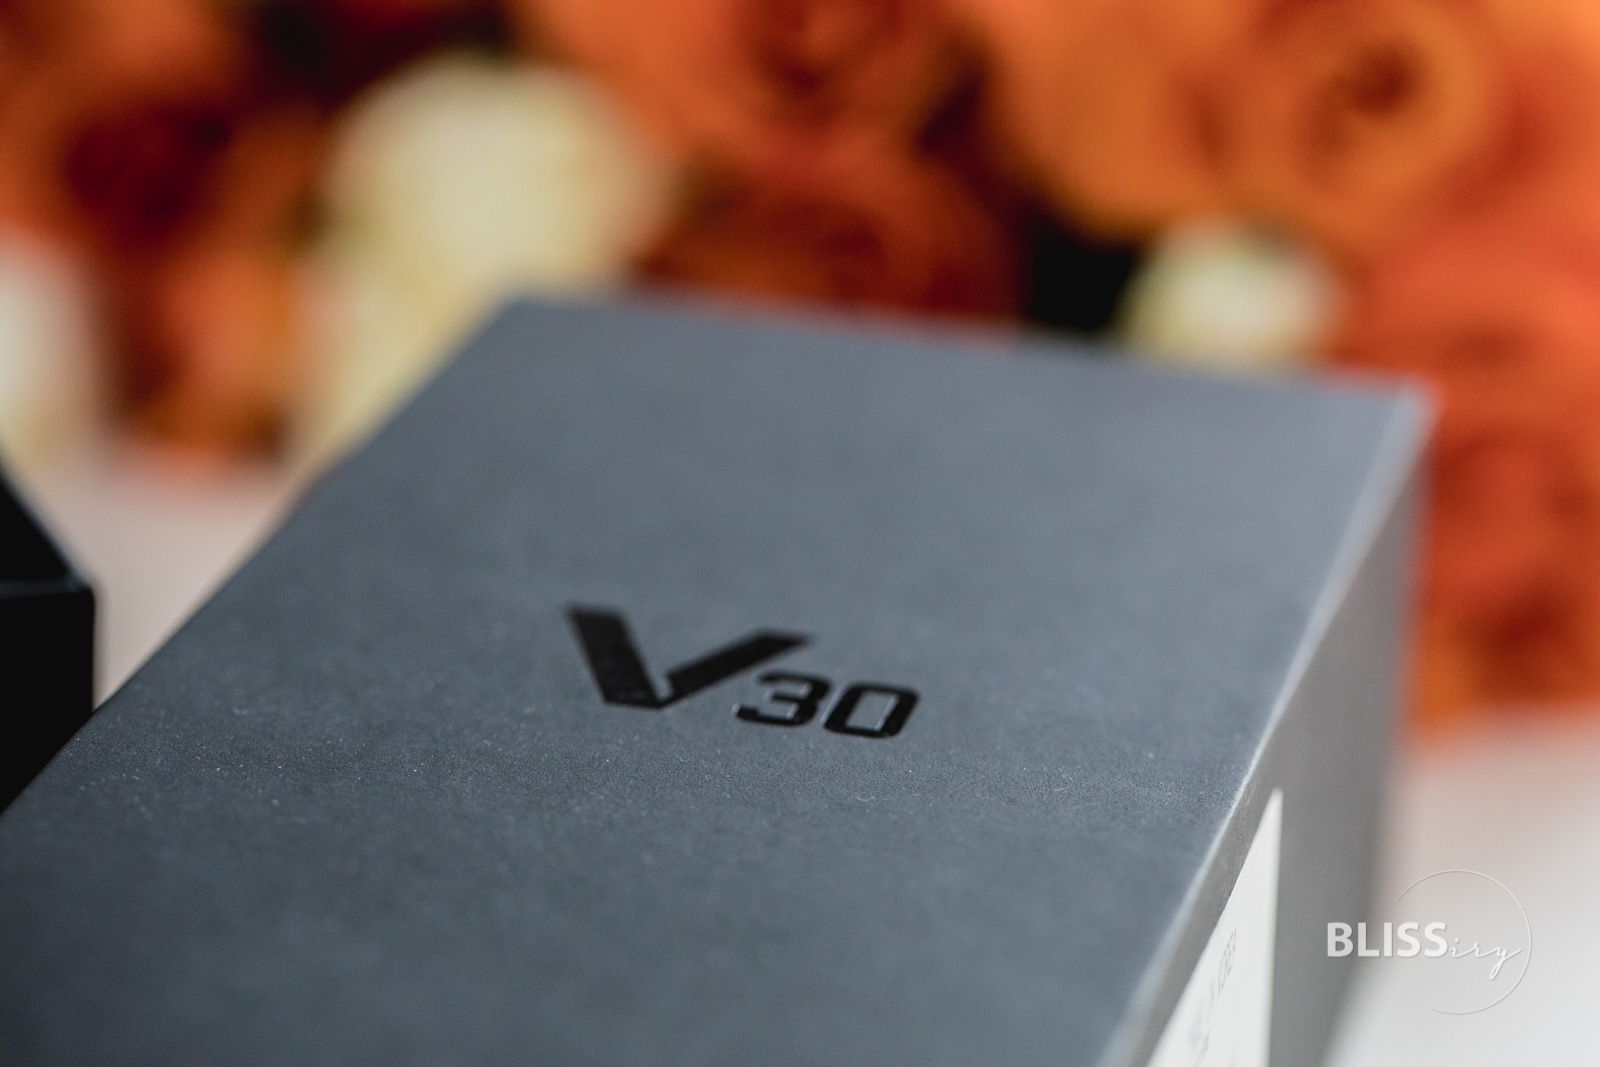 LG V30 Smartphone im Test - Die Alternative im gehobenen Segment - LG V30 Produkttest - Smartphone-Blog - Technikblogger - Erfahrungen und Eindrücke - LG Produkte - Wertigkeit, Software